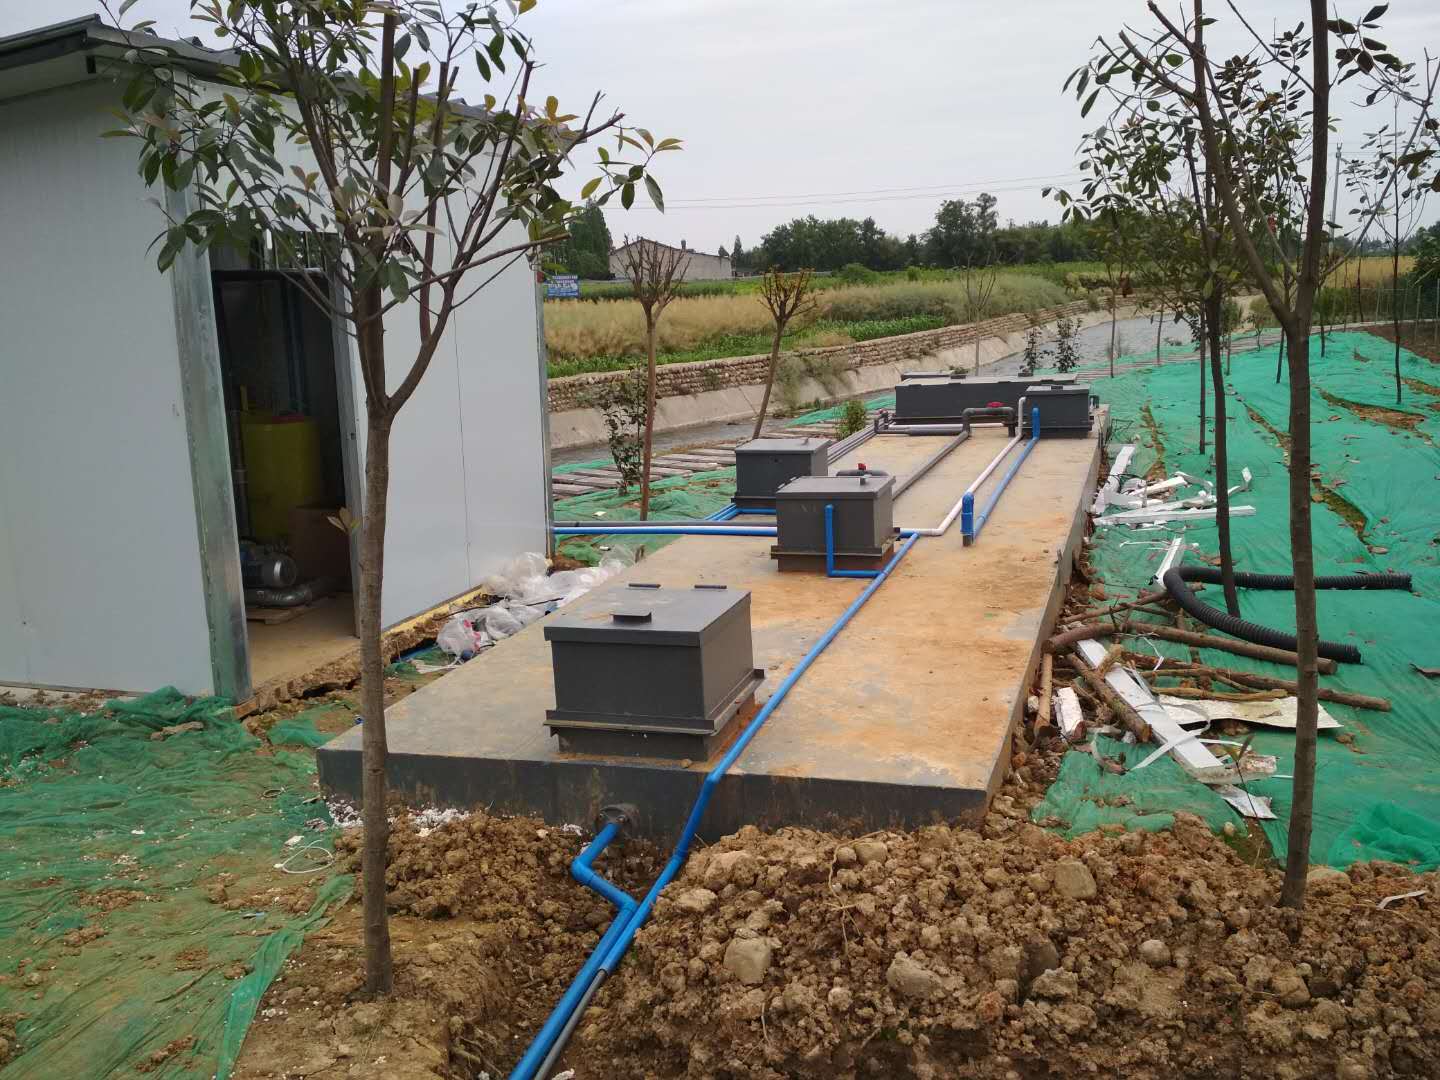 农村一体化污水处理设备